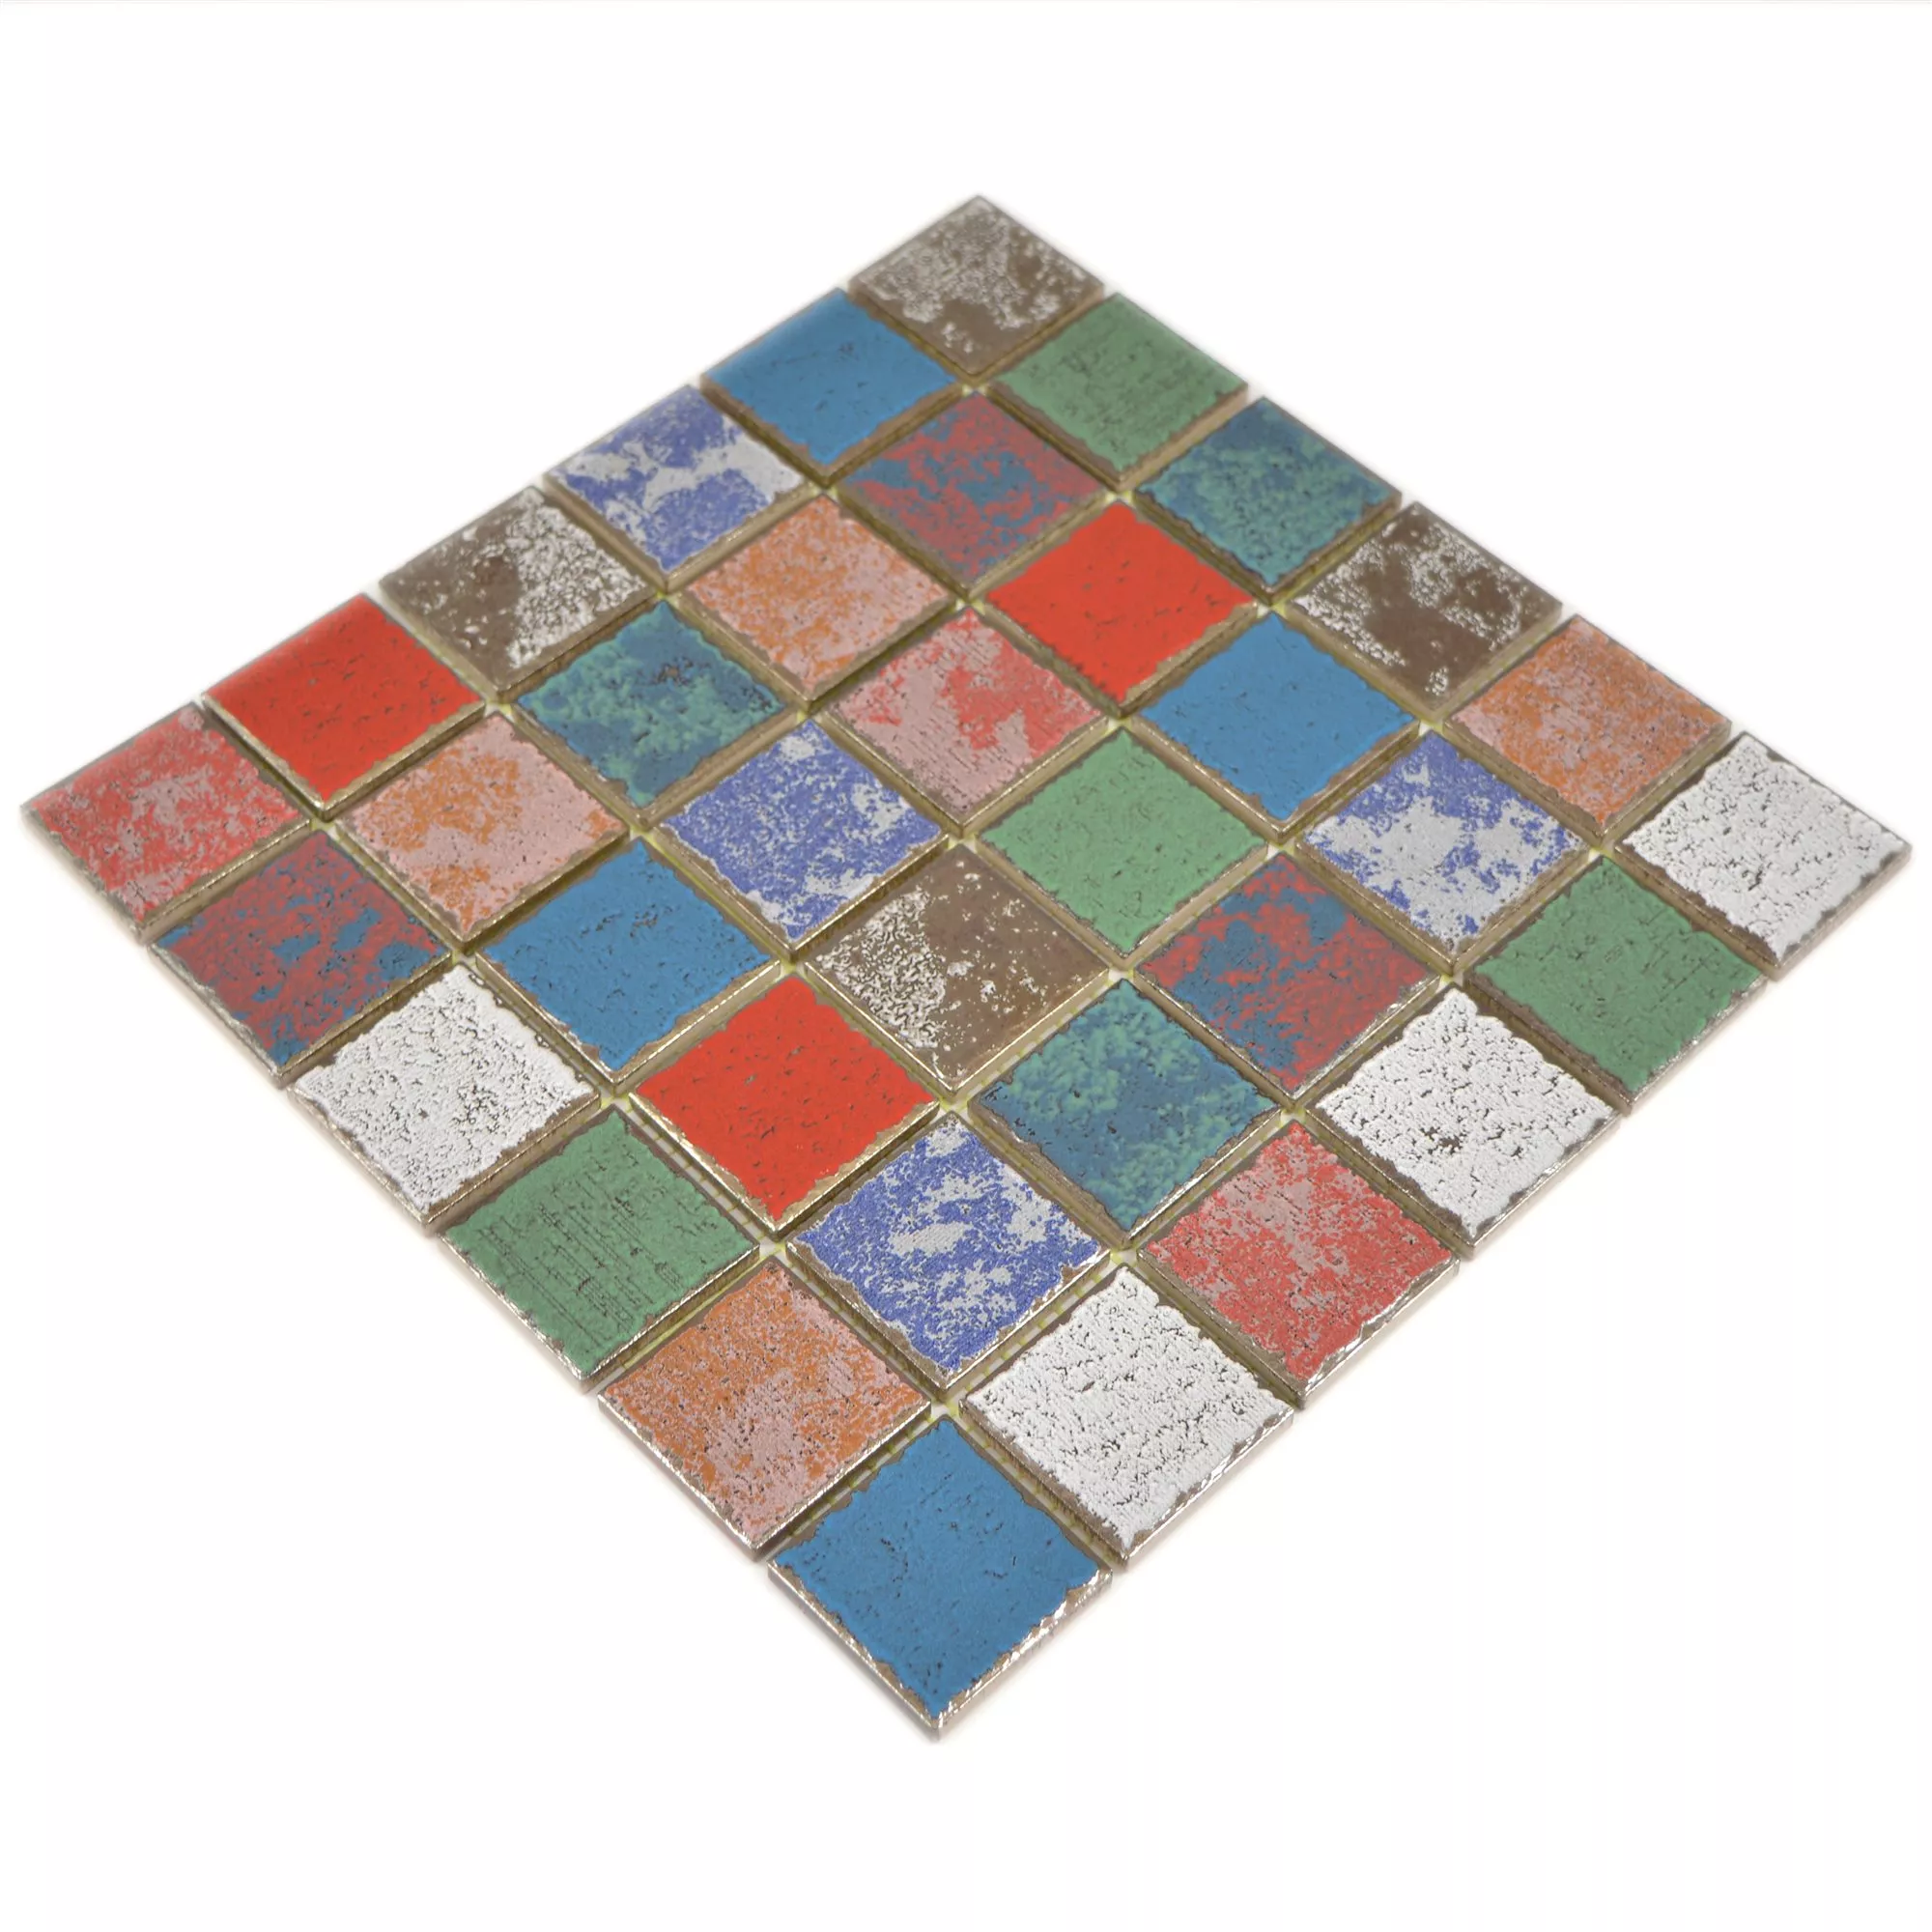 Sample Ceramic Mosaic Tiles Oriente Retro Optic Colored